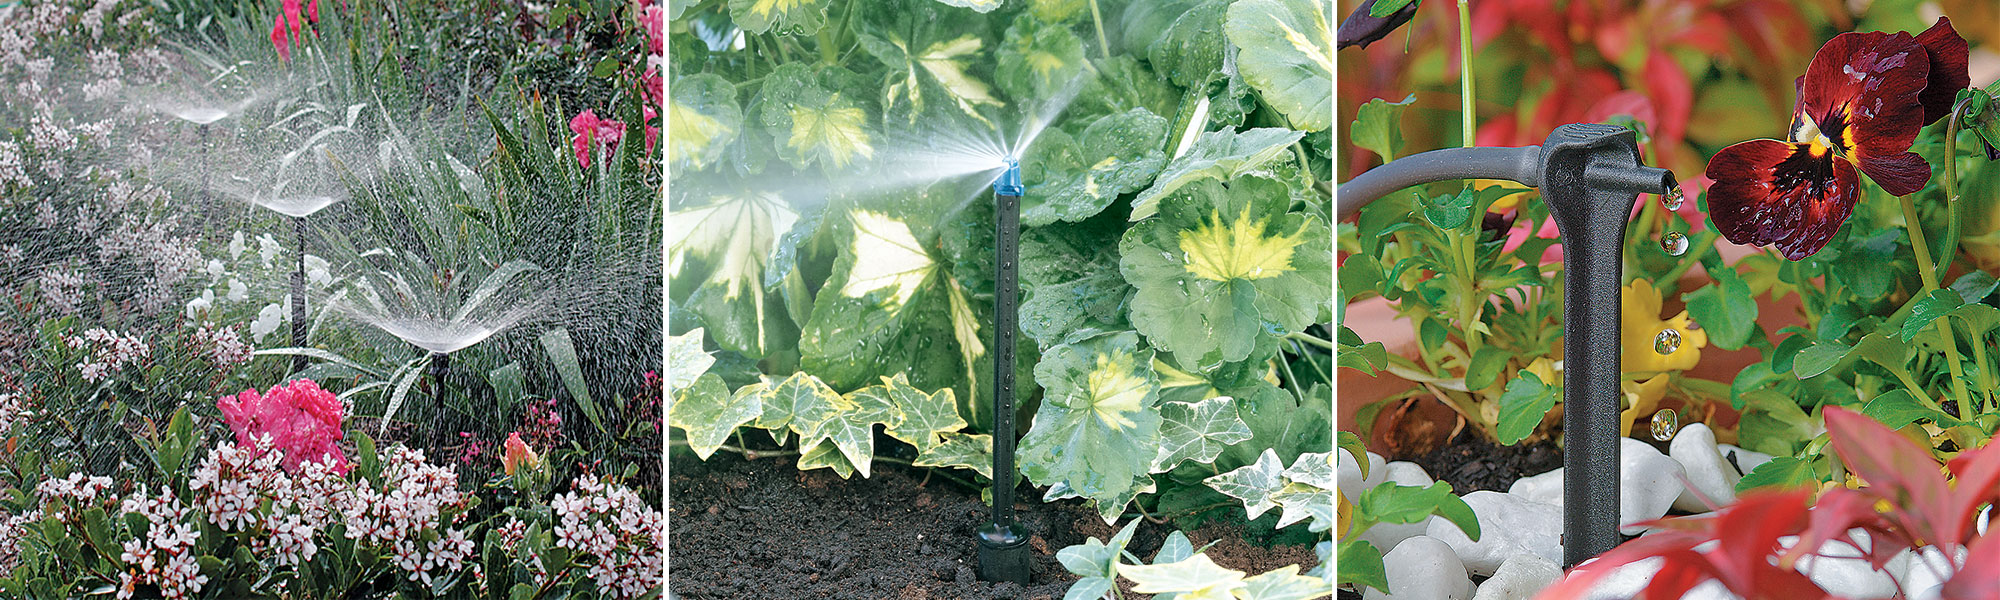 Irrigation goutte à goutte : Planifier et installer un système d